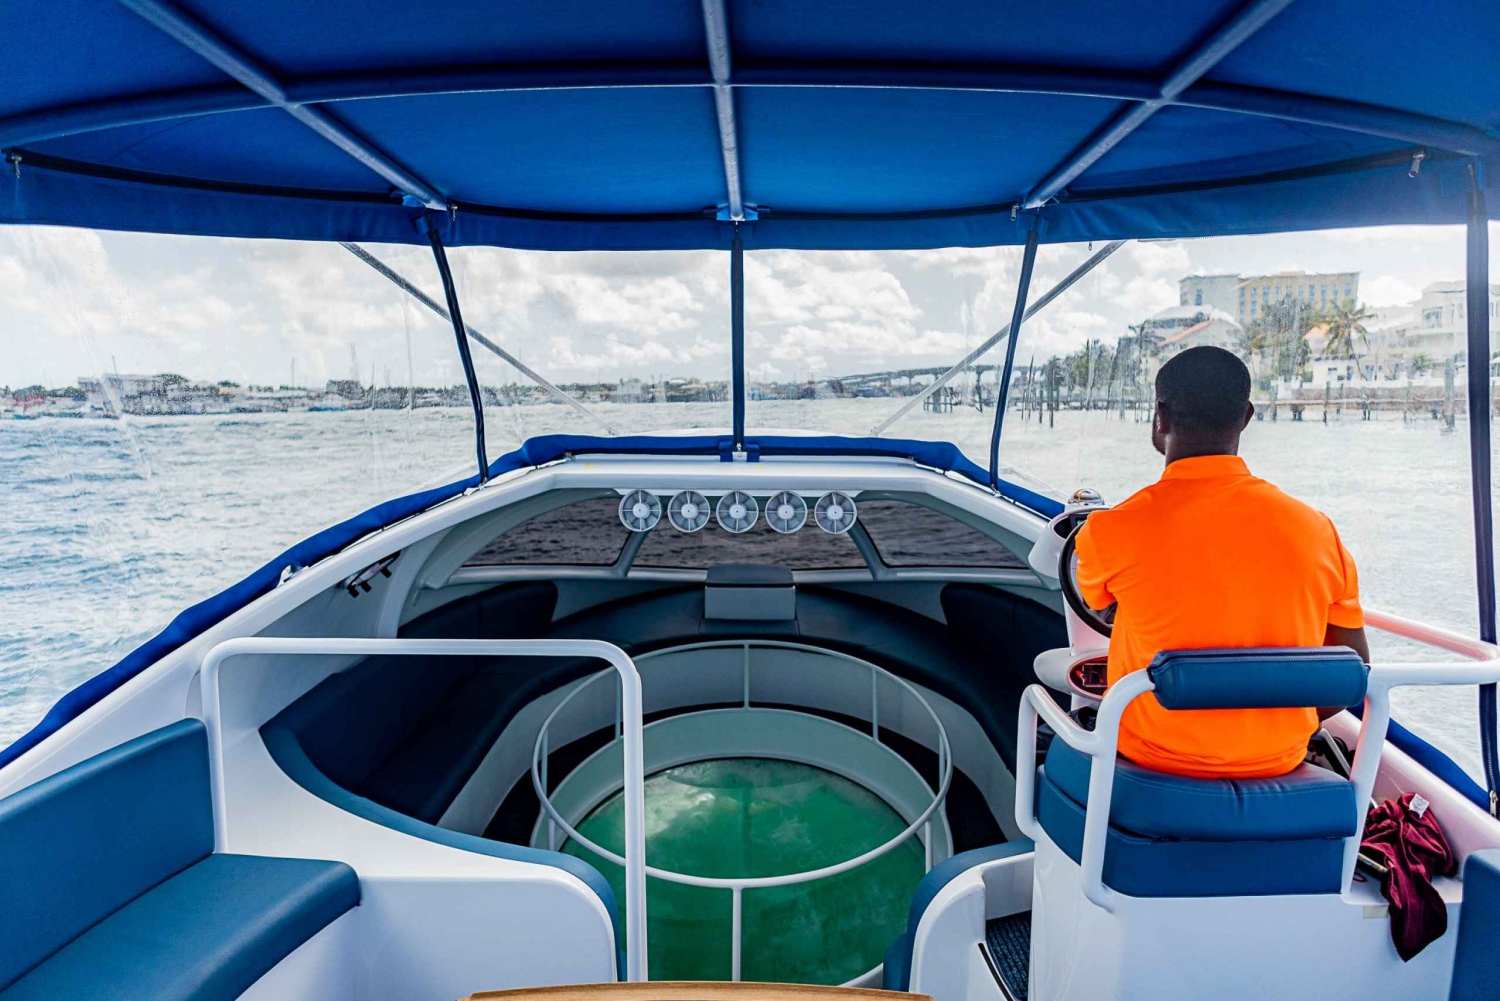 Rajska wyspa: wycieczka łodzią ze szklanym dnem z komentarzem na żywo